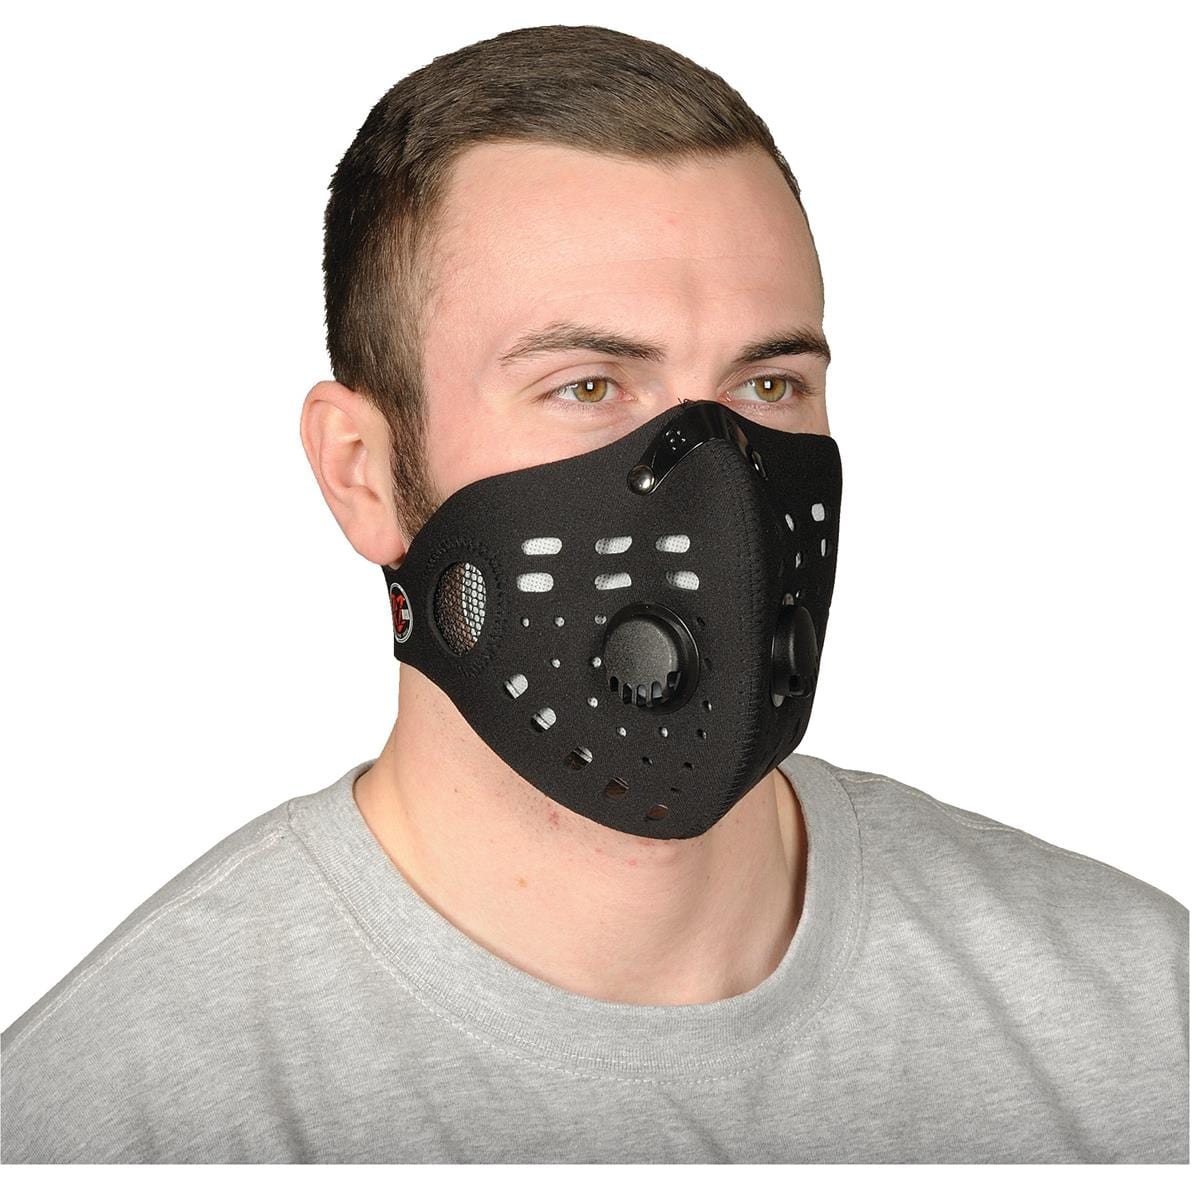 RZ Mask Environmental Neoprene Dust Mask Gempler s